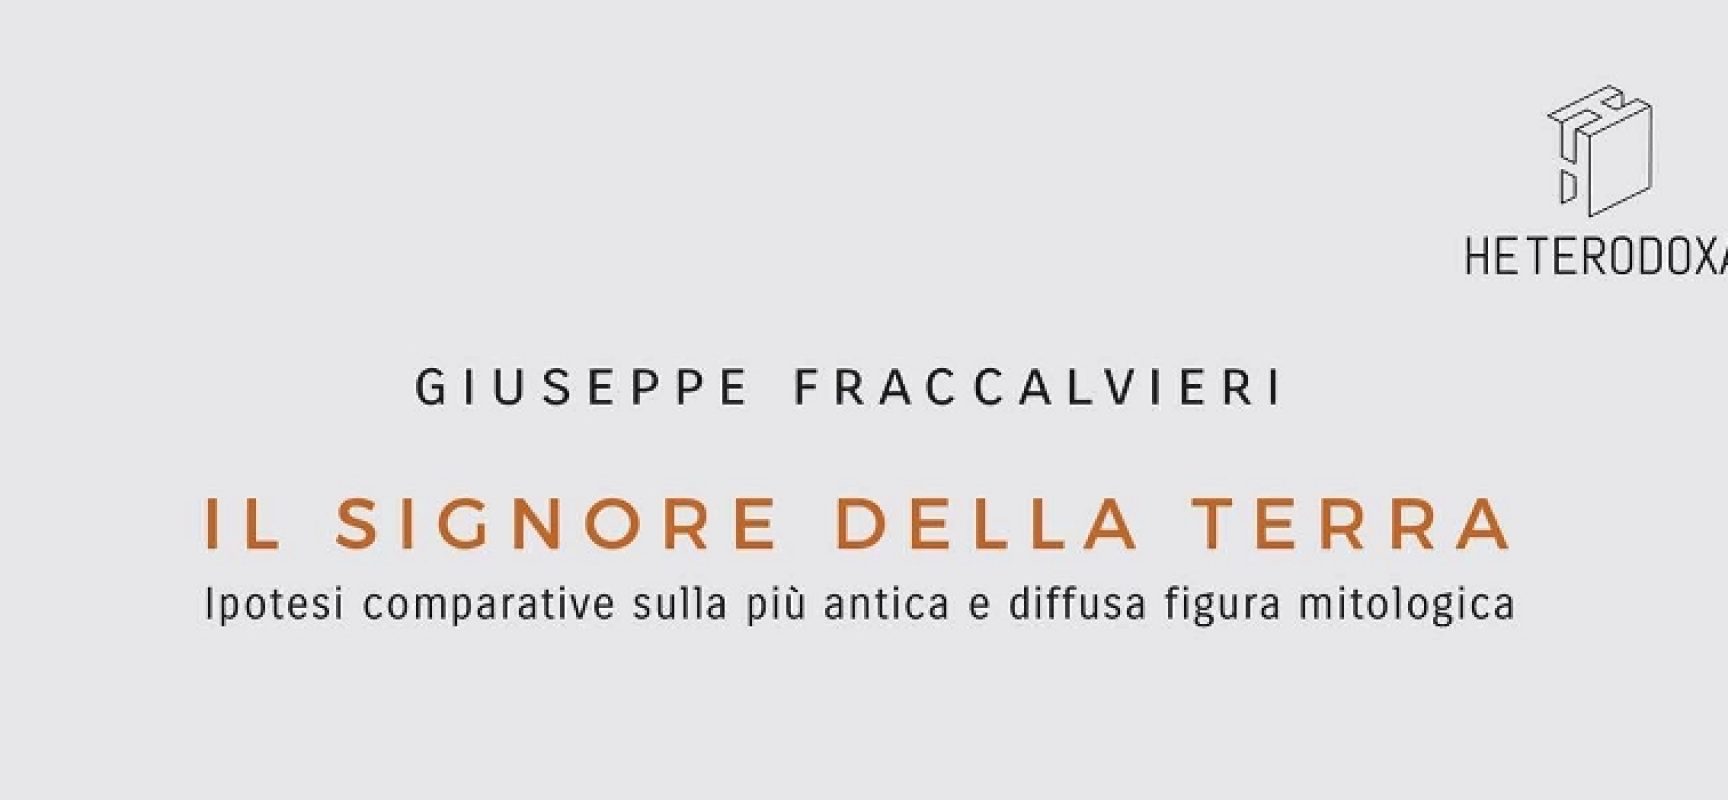 Tupputincontri presenta il saggio multidisciplinare di Giuseppe Fraccalvieri